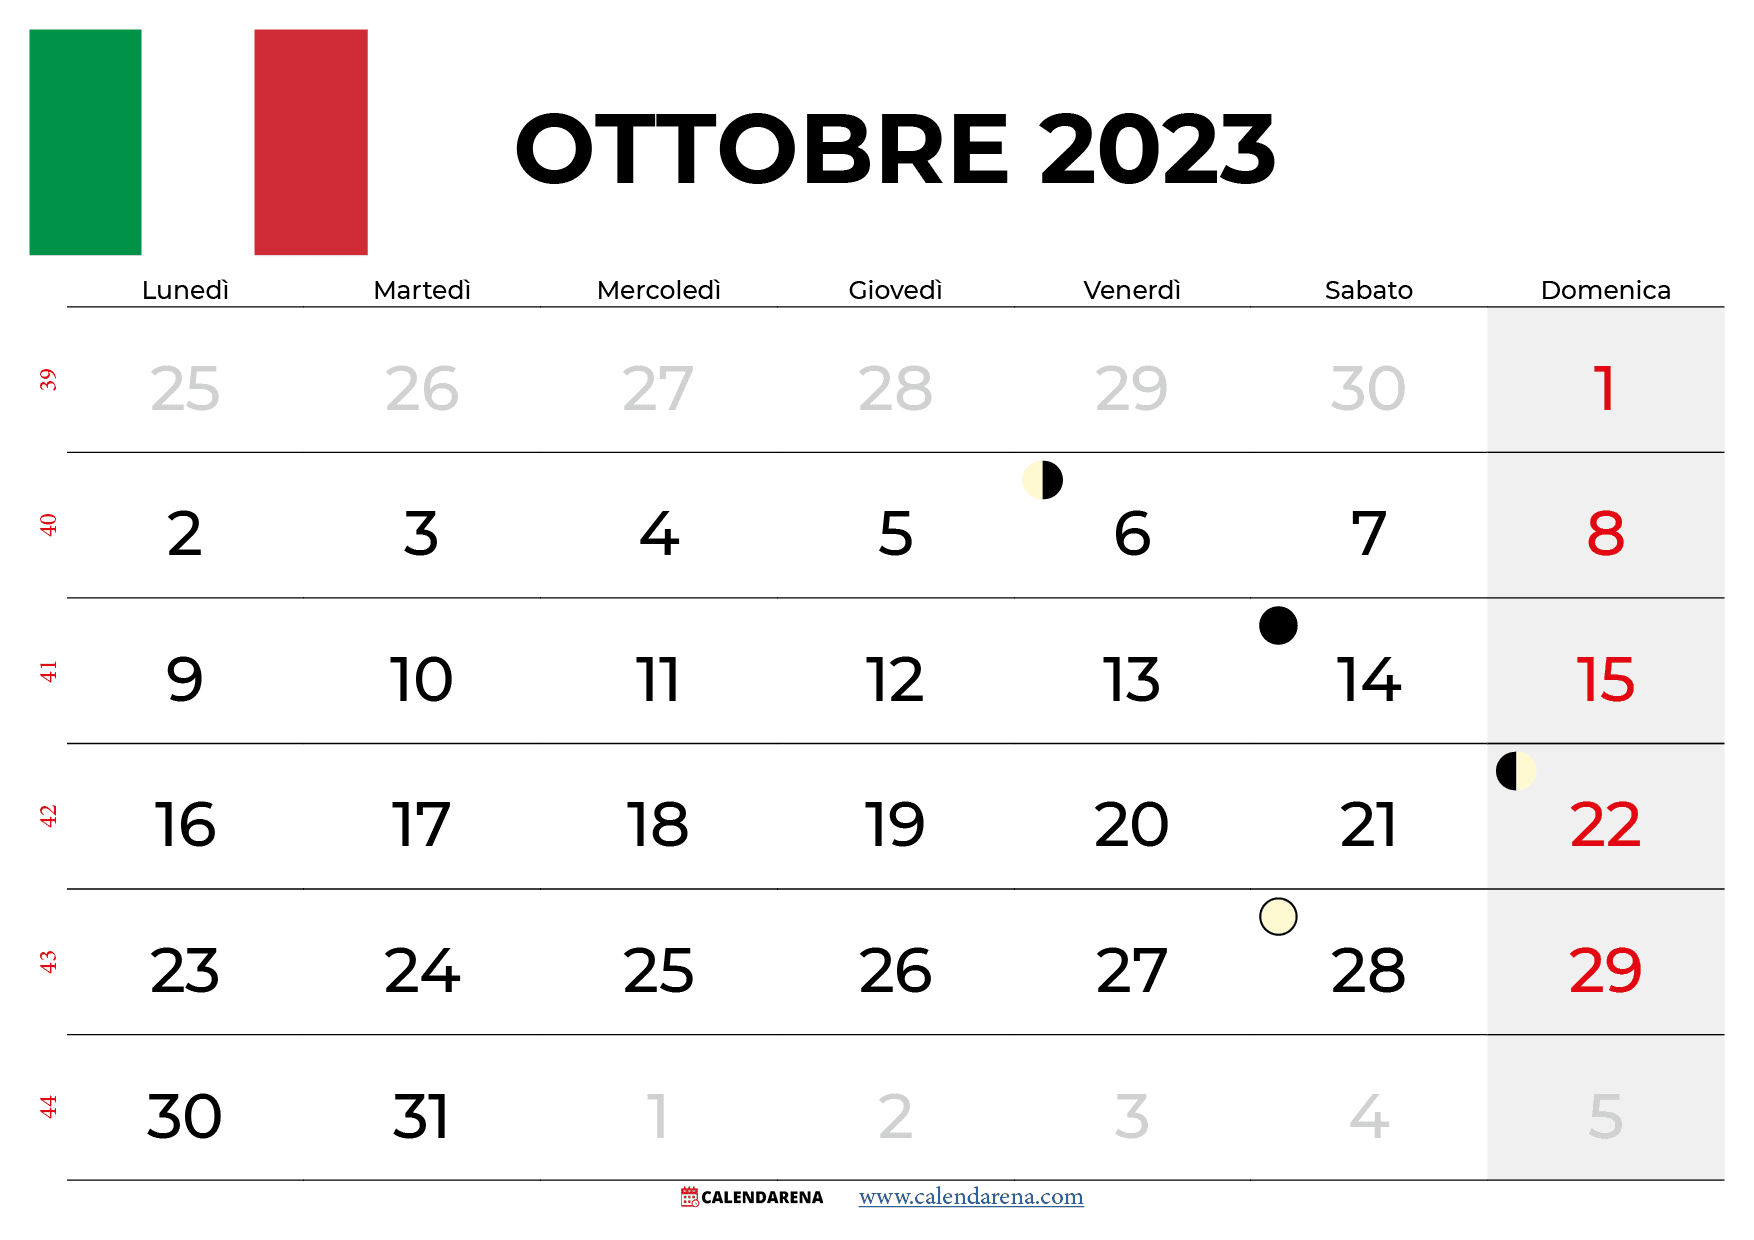 calendario ottobre 2023